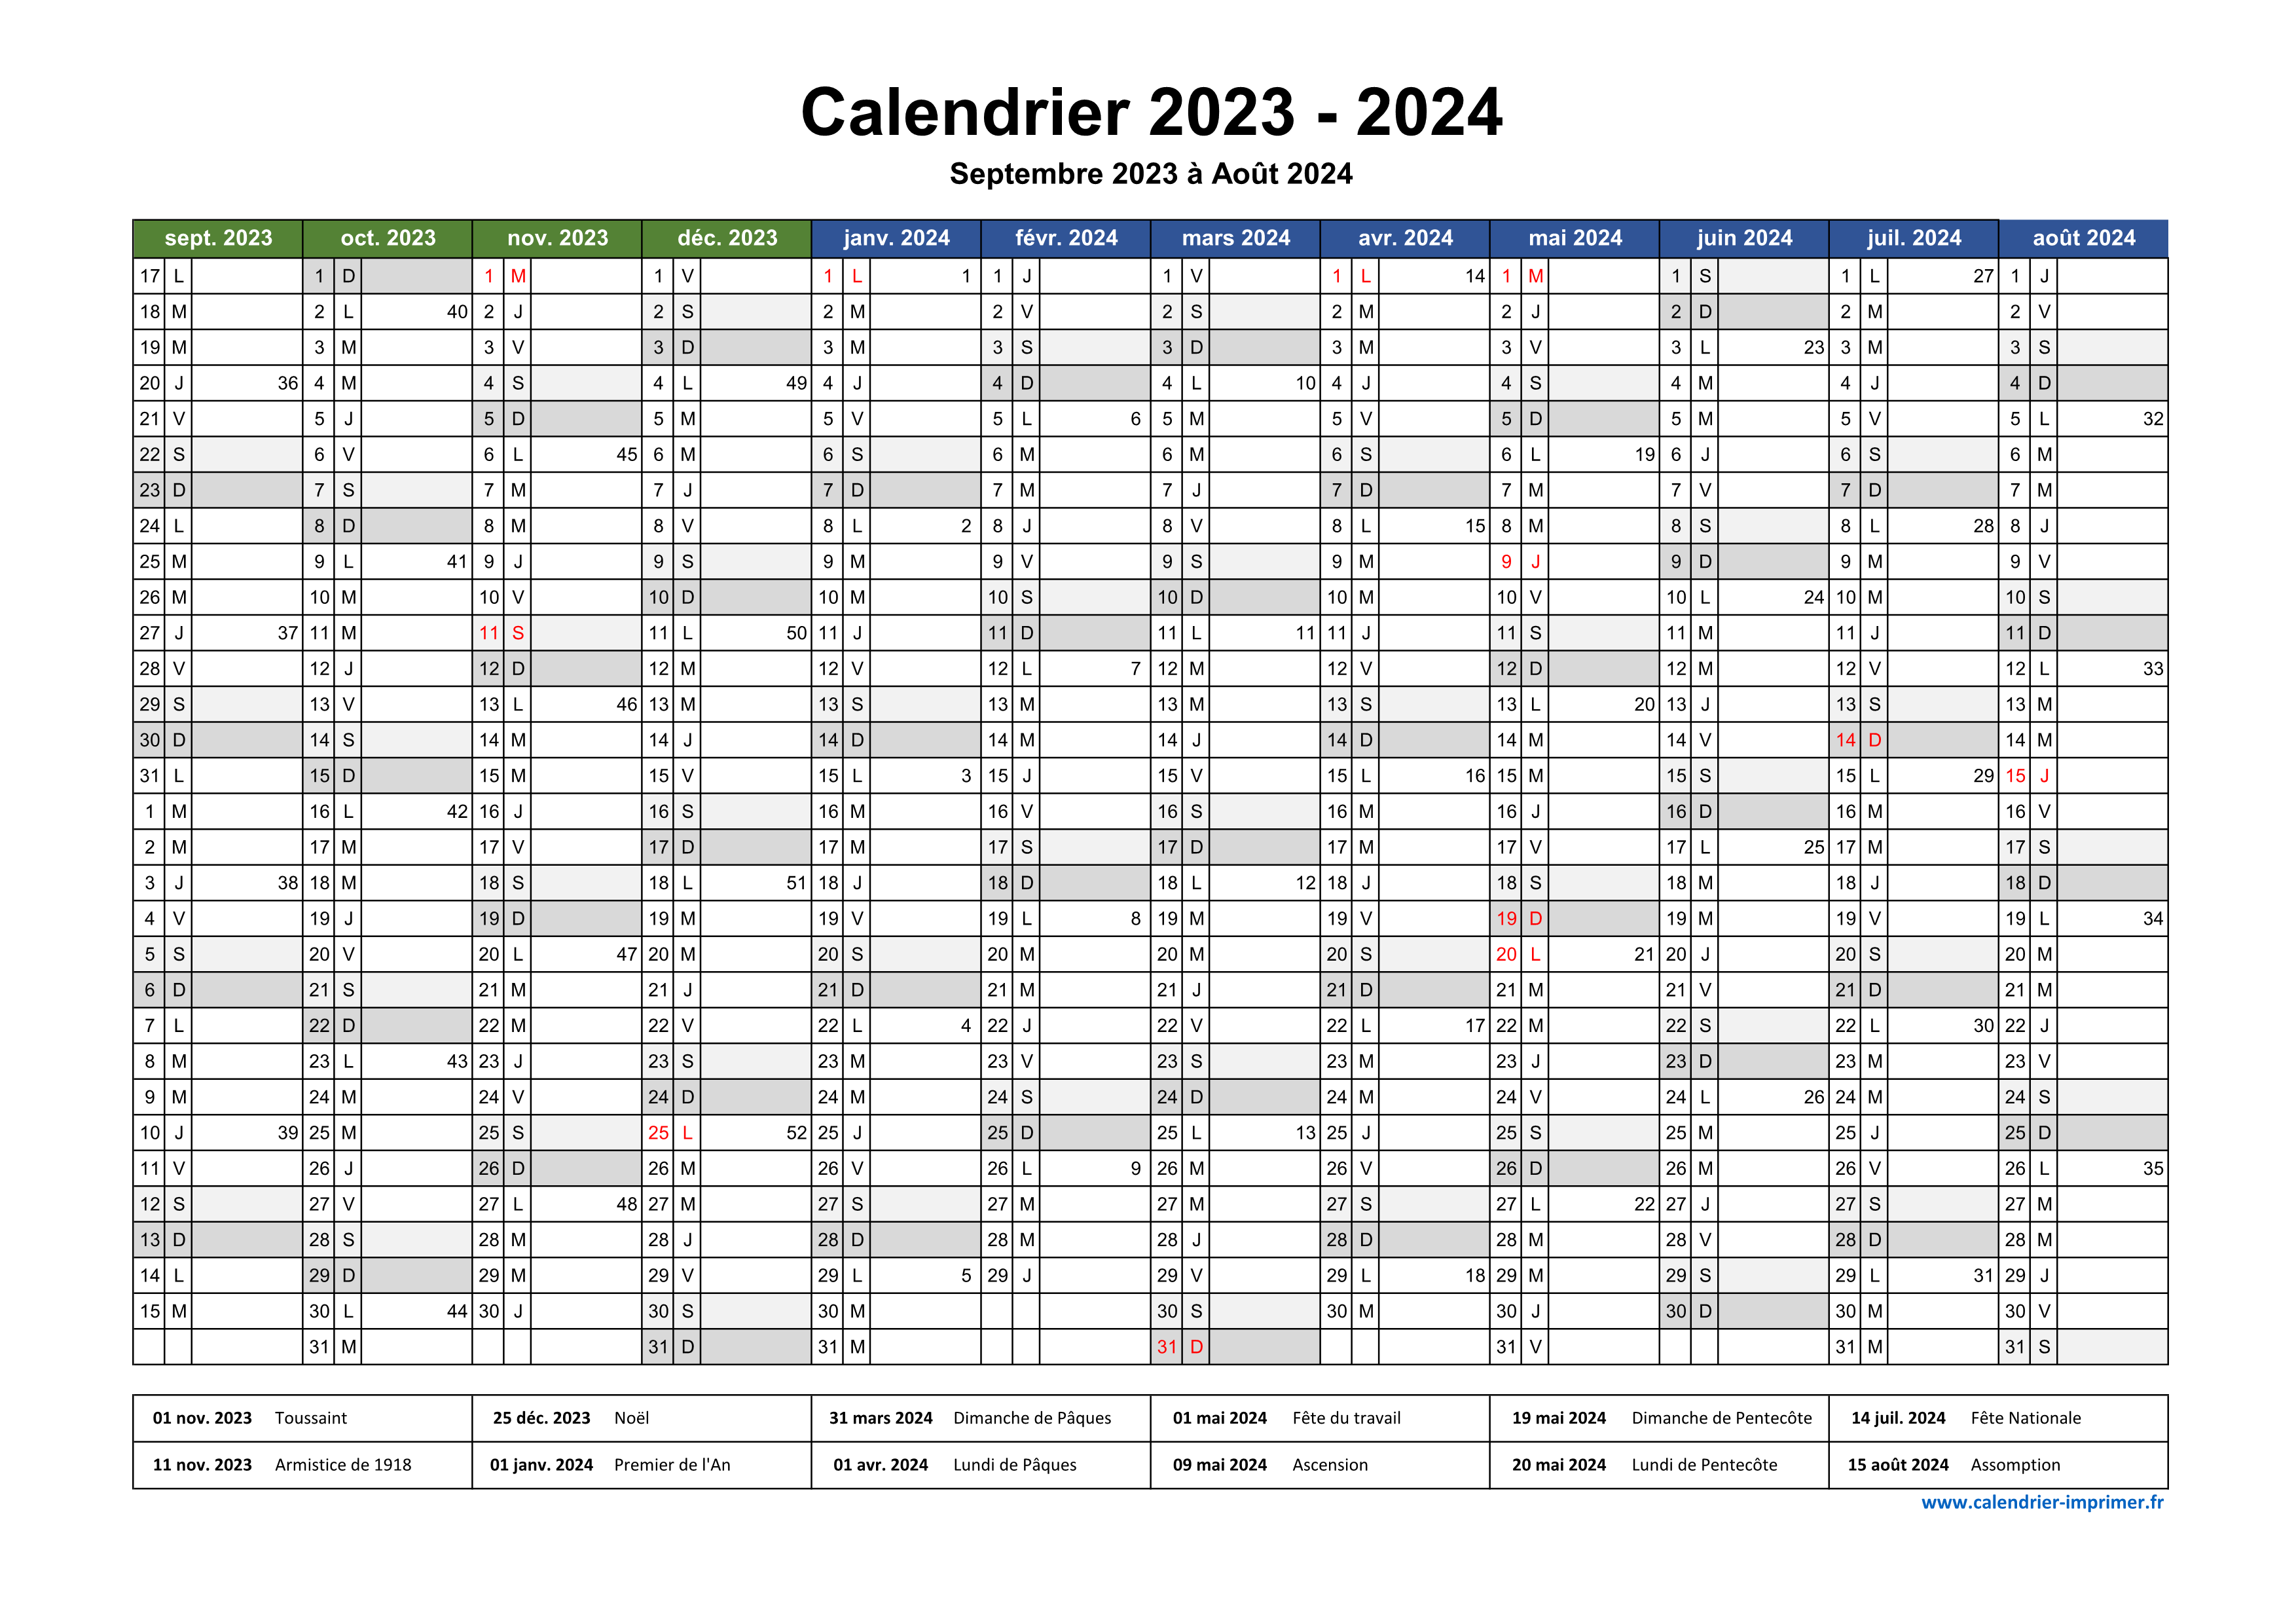 Calendrier scolaire 2023 2024 Excel gratuit 